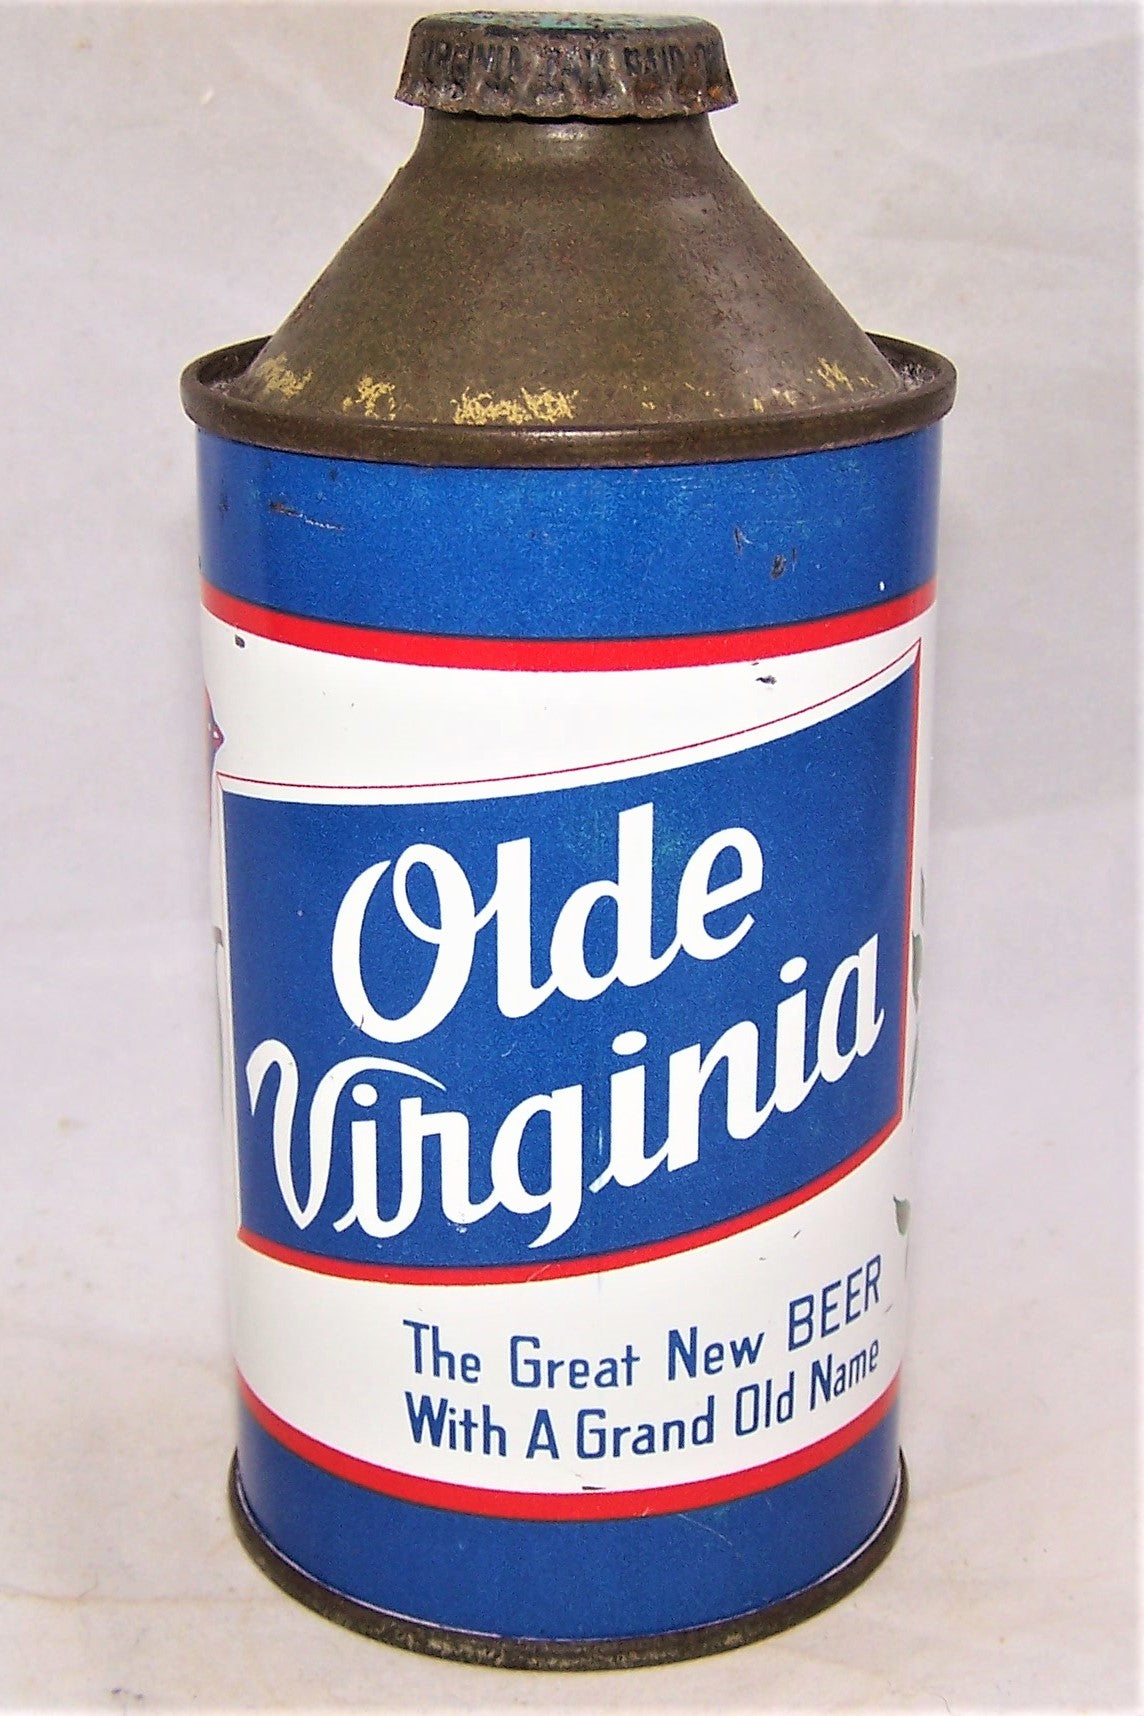 Olde Virginia "The Great New Beer" USBC 178-15, Grade 1/1-